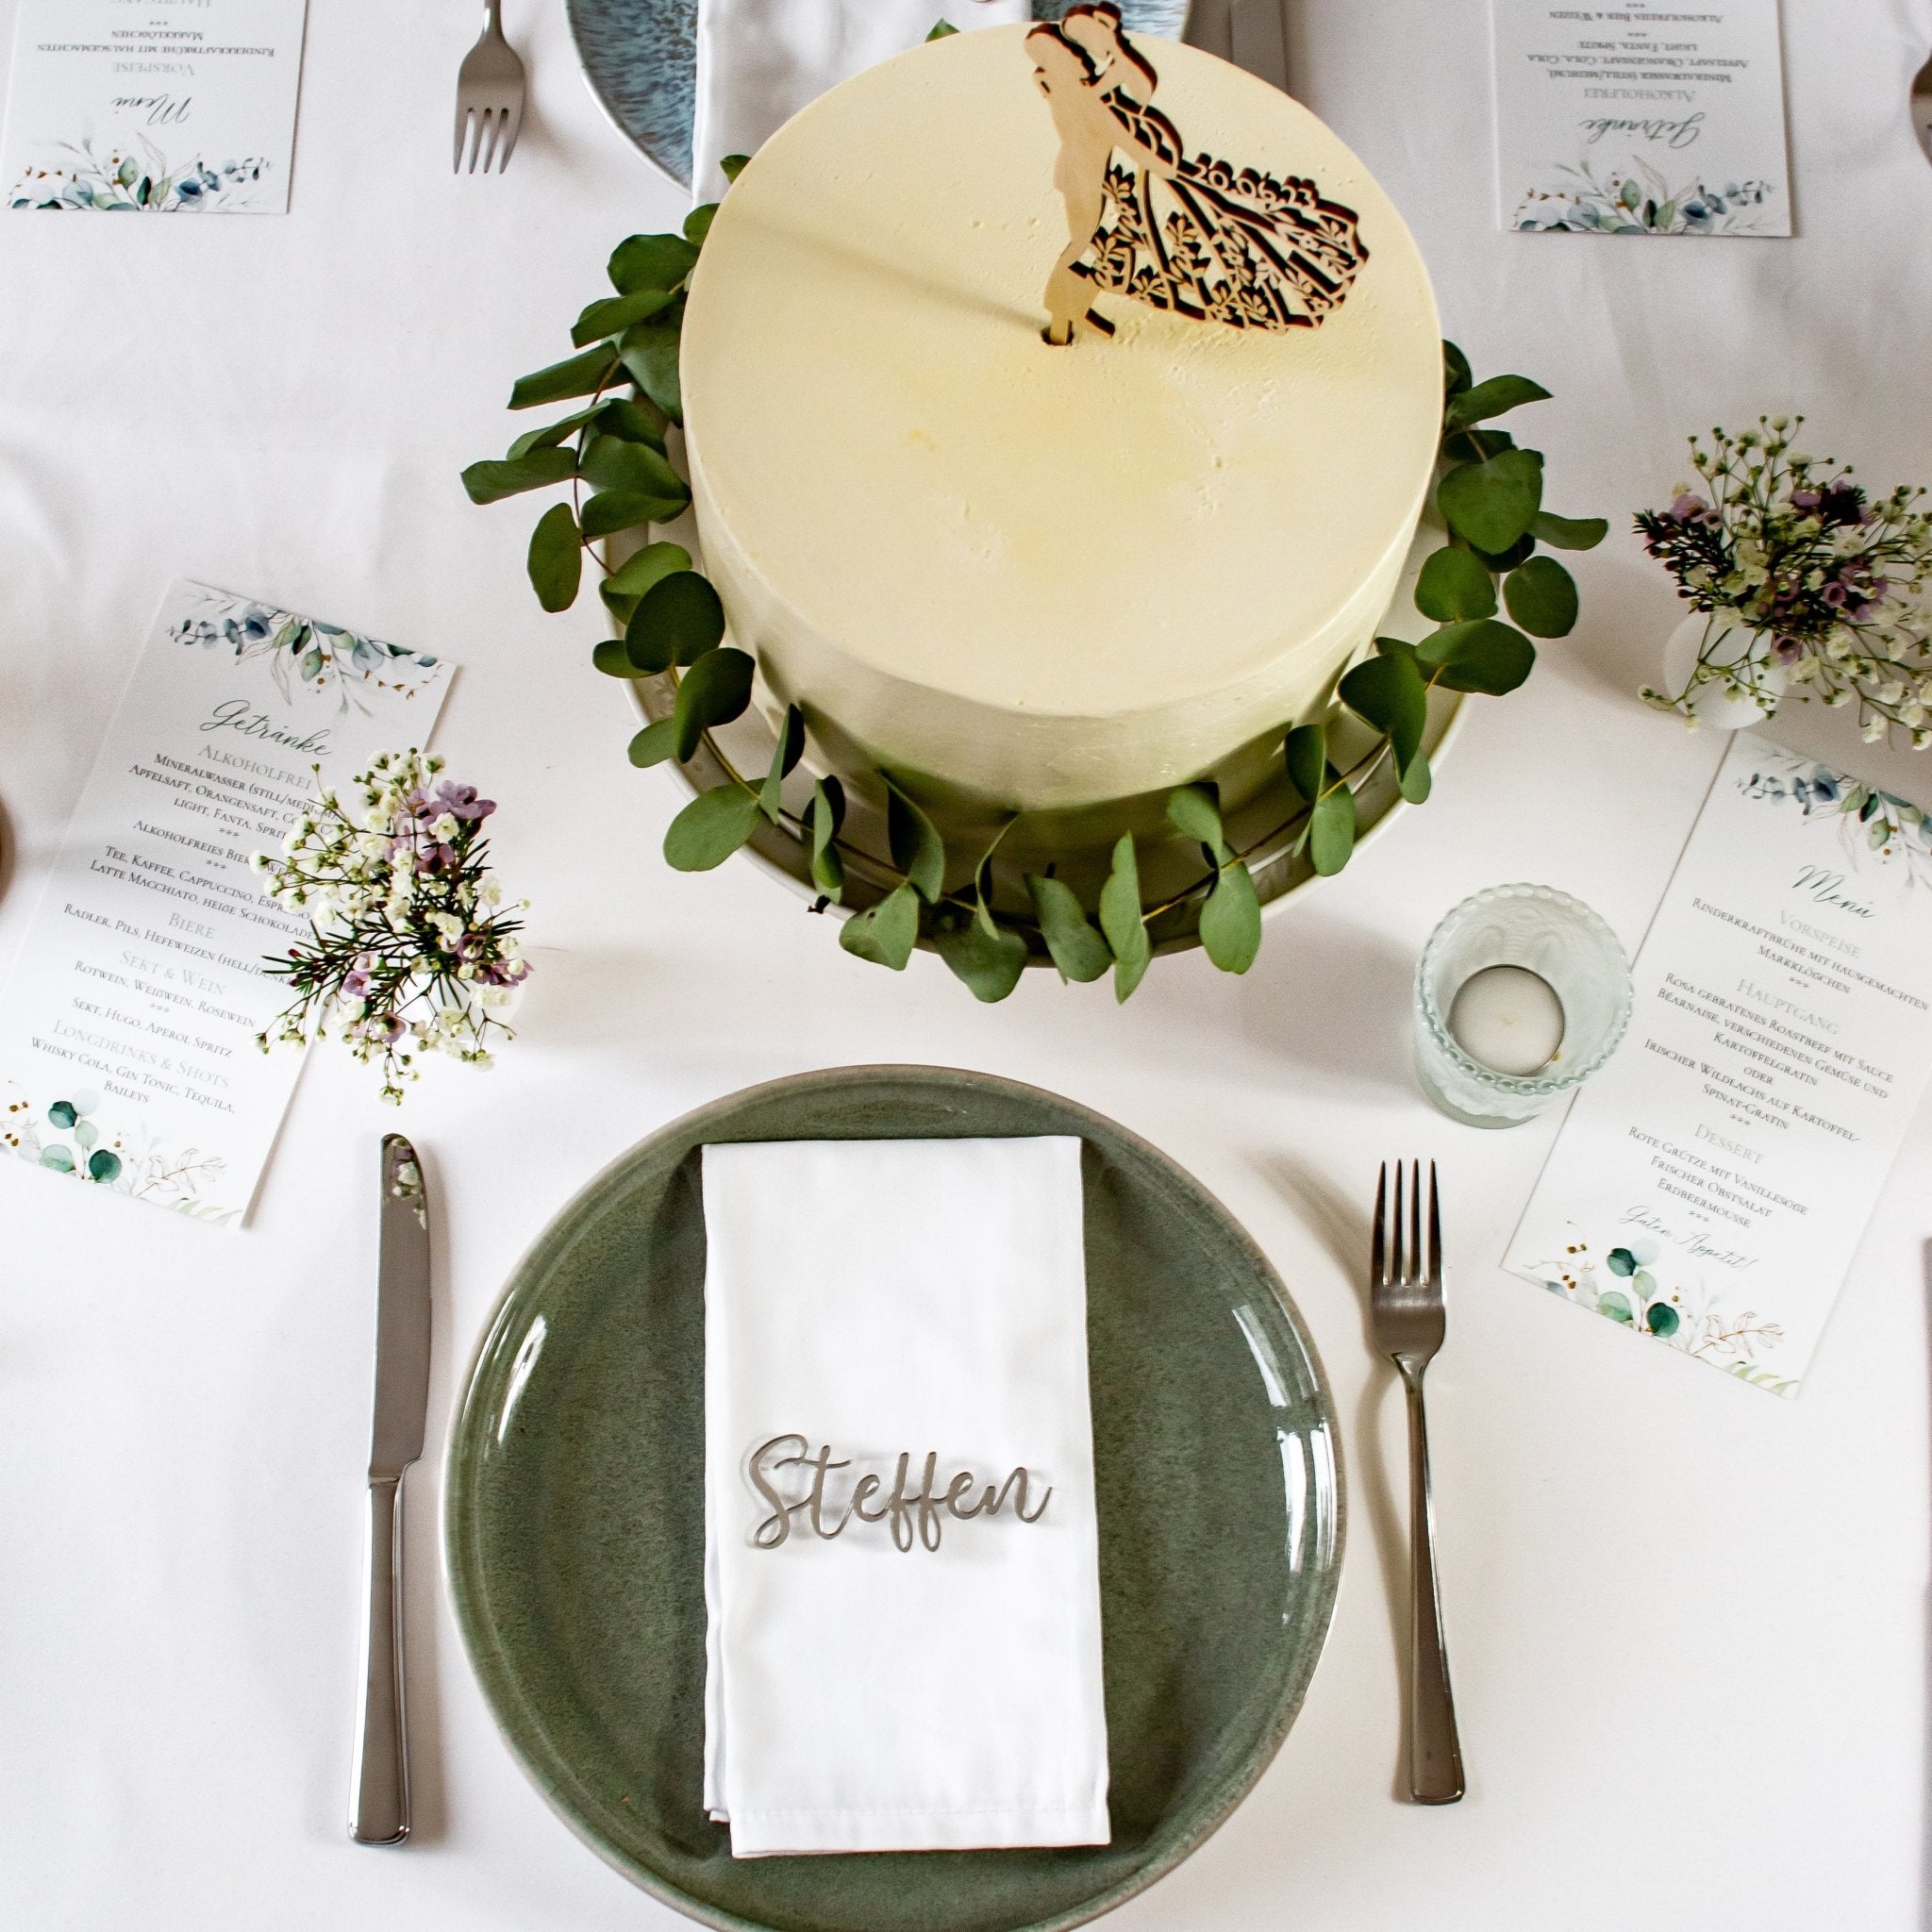 Hochzeitstisch dekoriert zur Hochzeitsfeier. Namensschild aus silbernen Acryl mit dem Namen &quot;Steffen&quot; als Tischdeko.